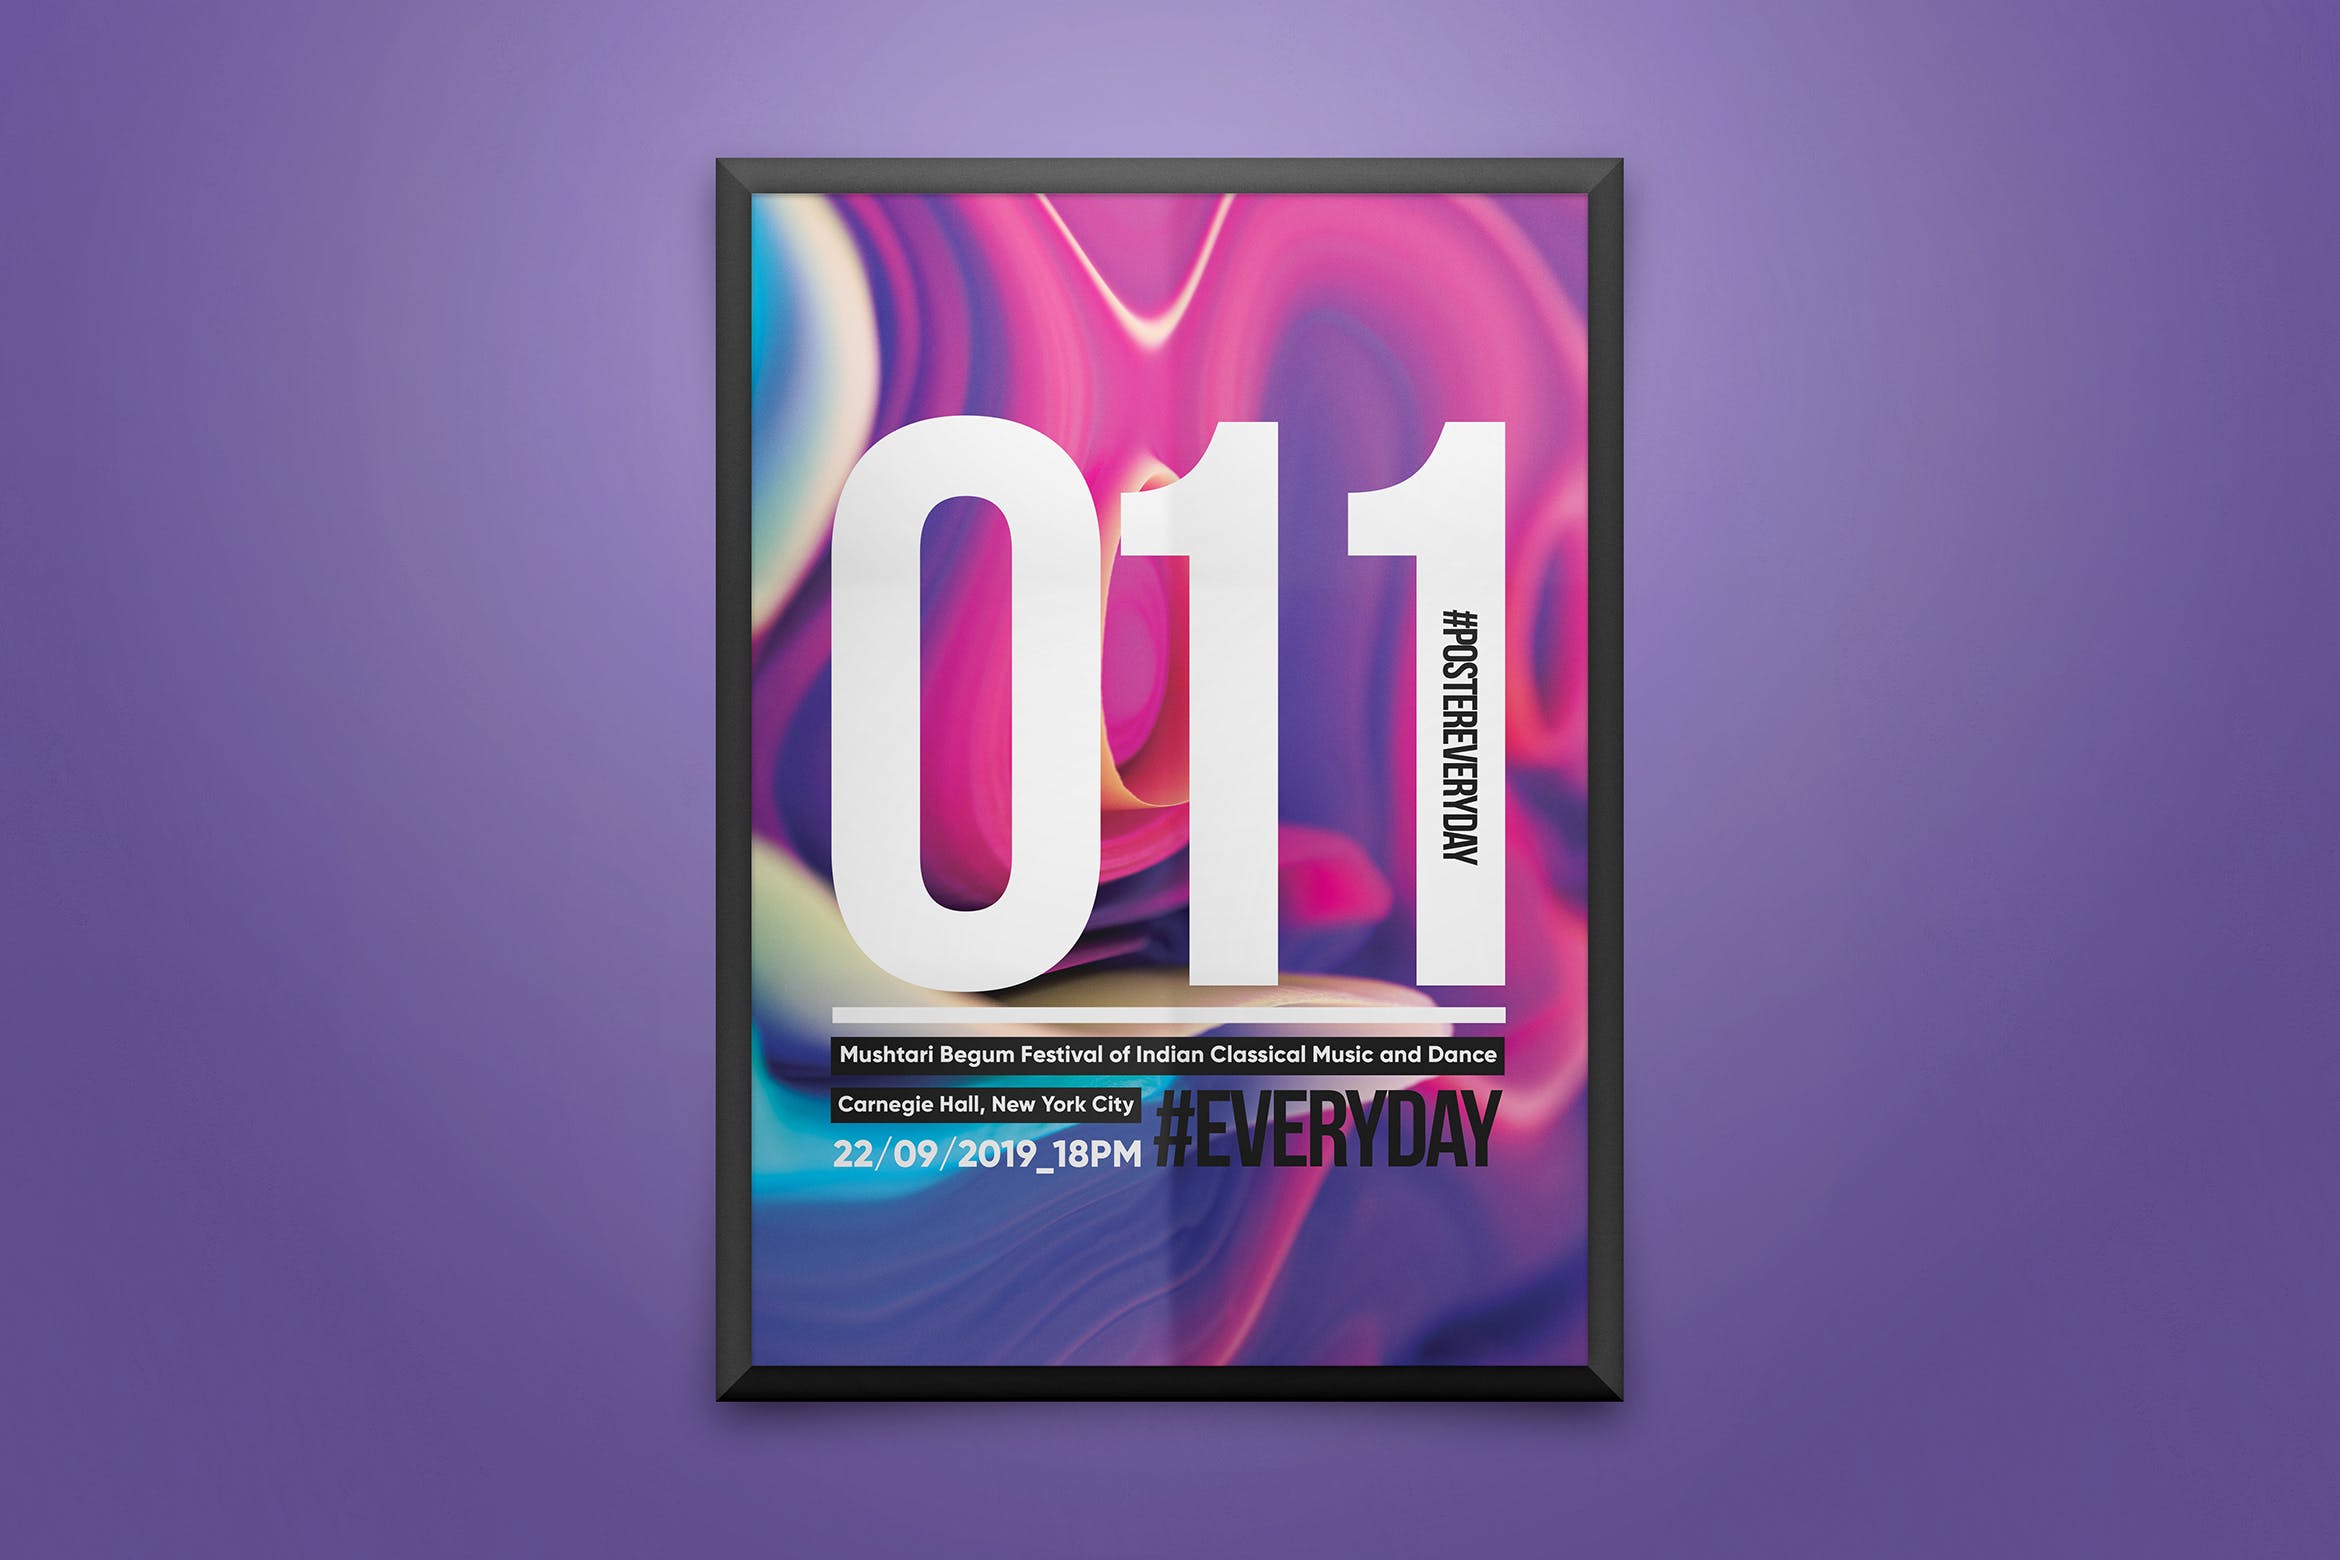 创意彩色液体背景海报PSD素材素材库精选模板 Creative Poster Template插图